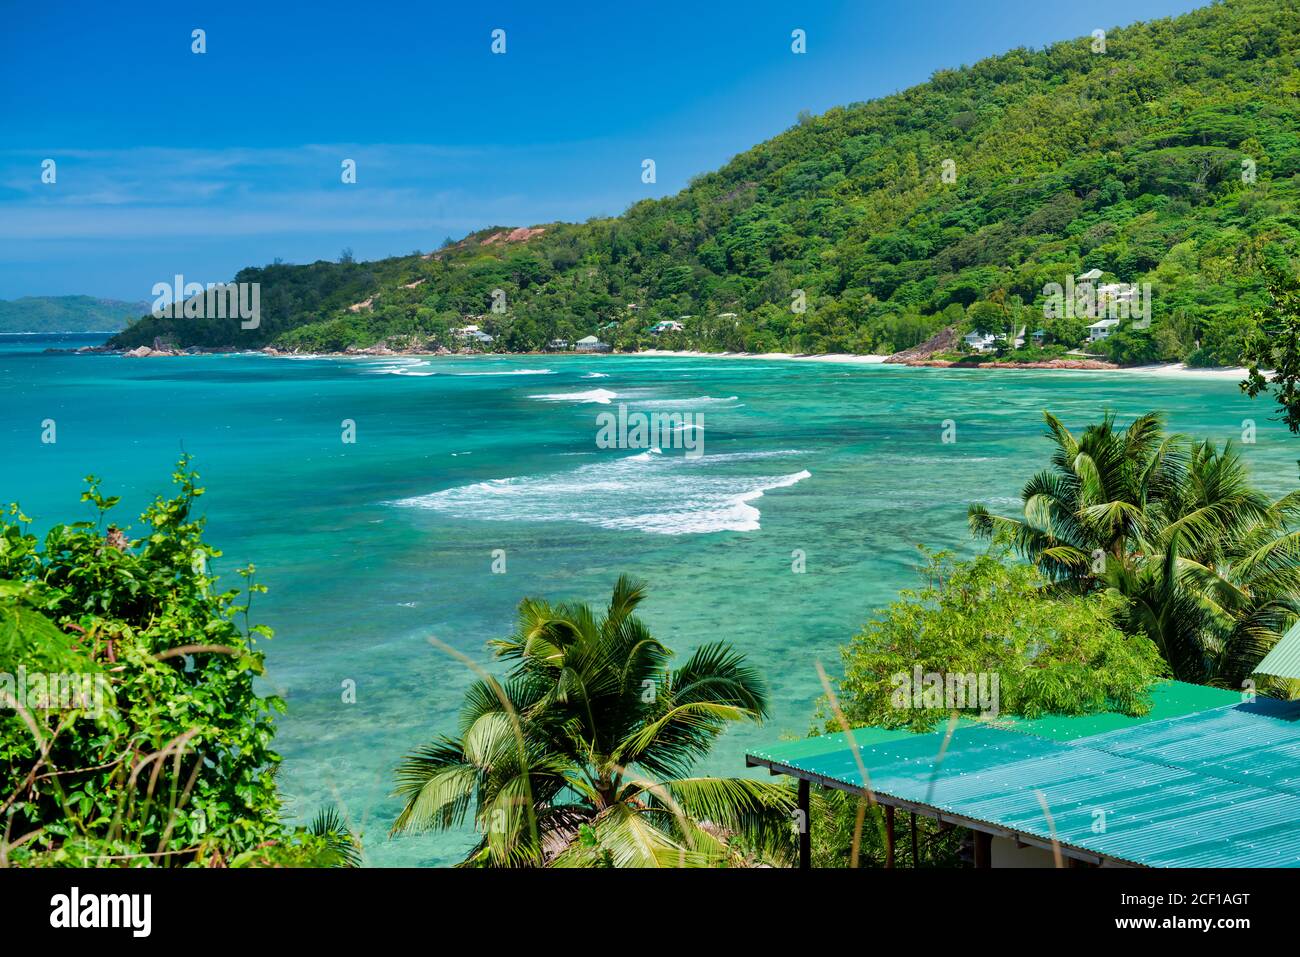 Palm trees along the shoreline, tropical island scenario. Stock Photo